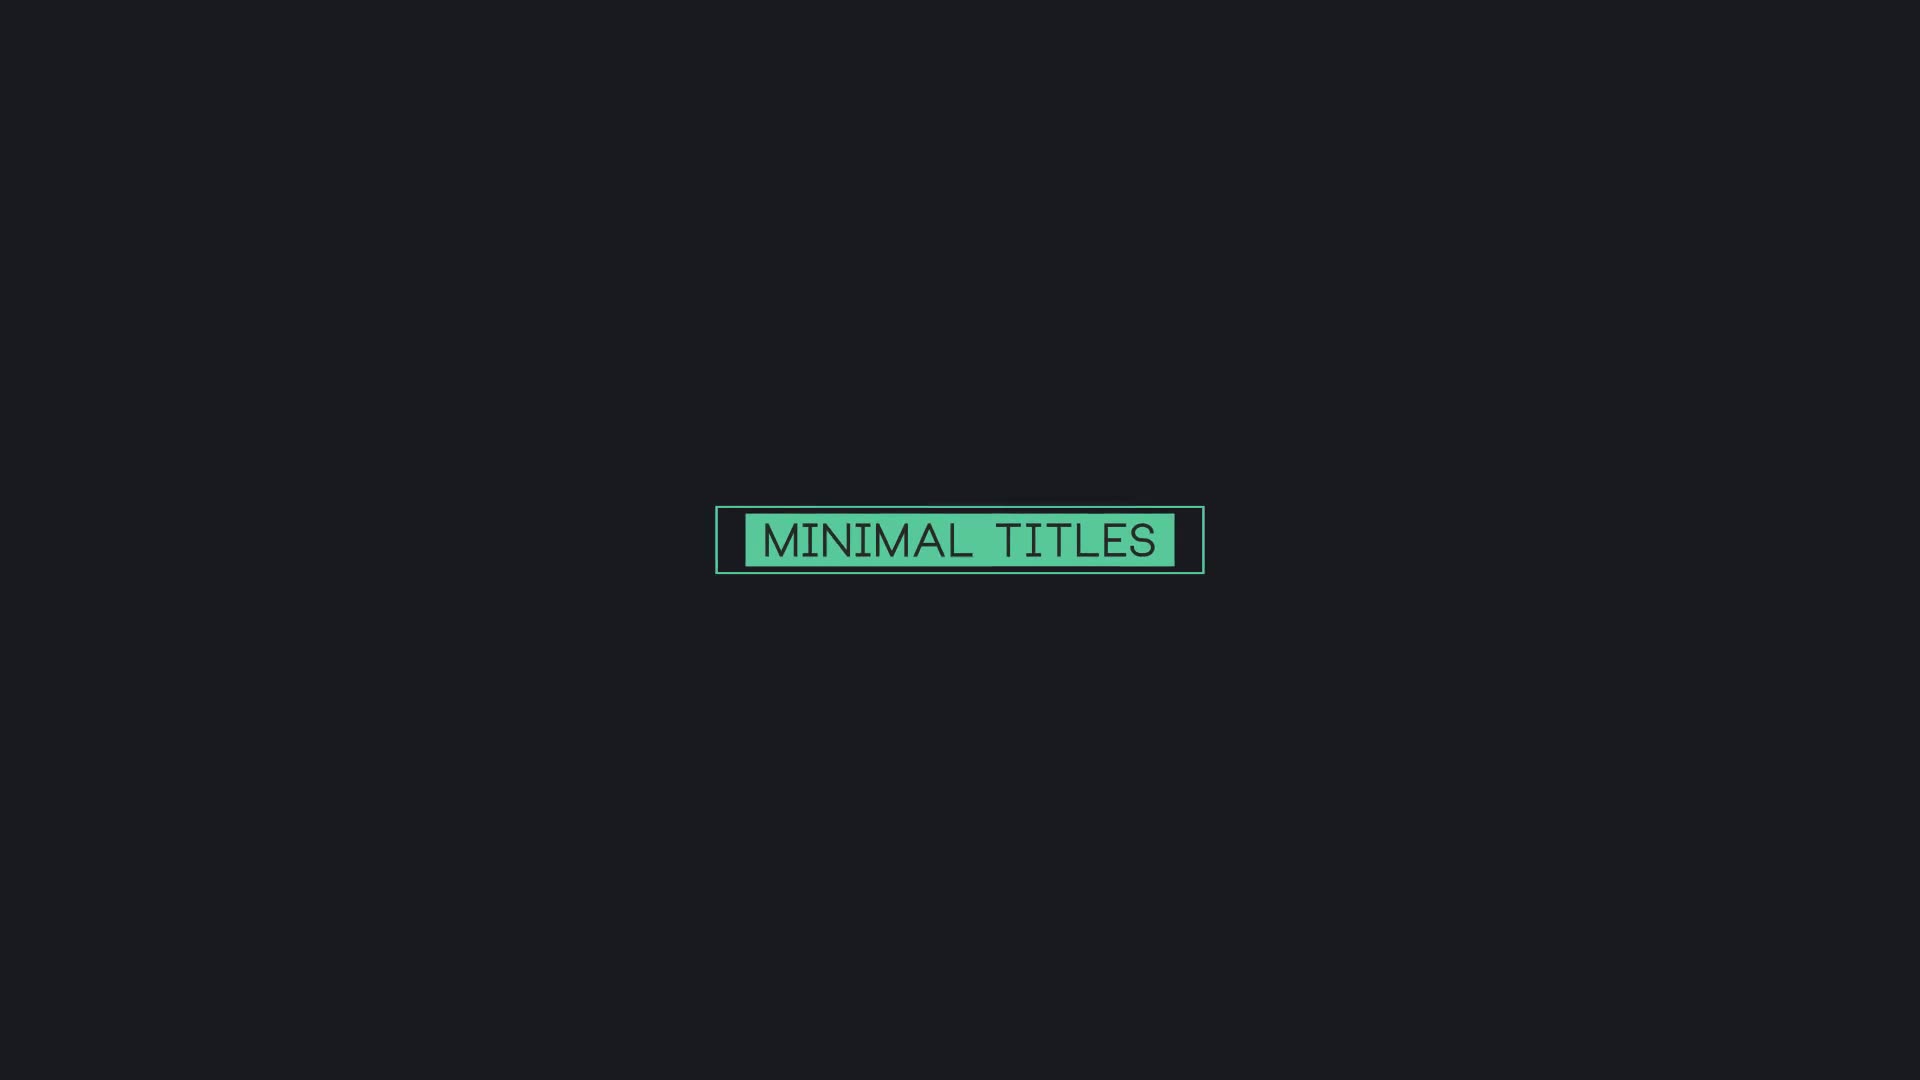 16 Minimal Titles - Download Videohive 22270269